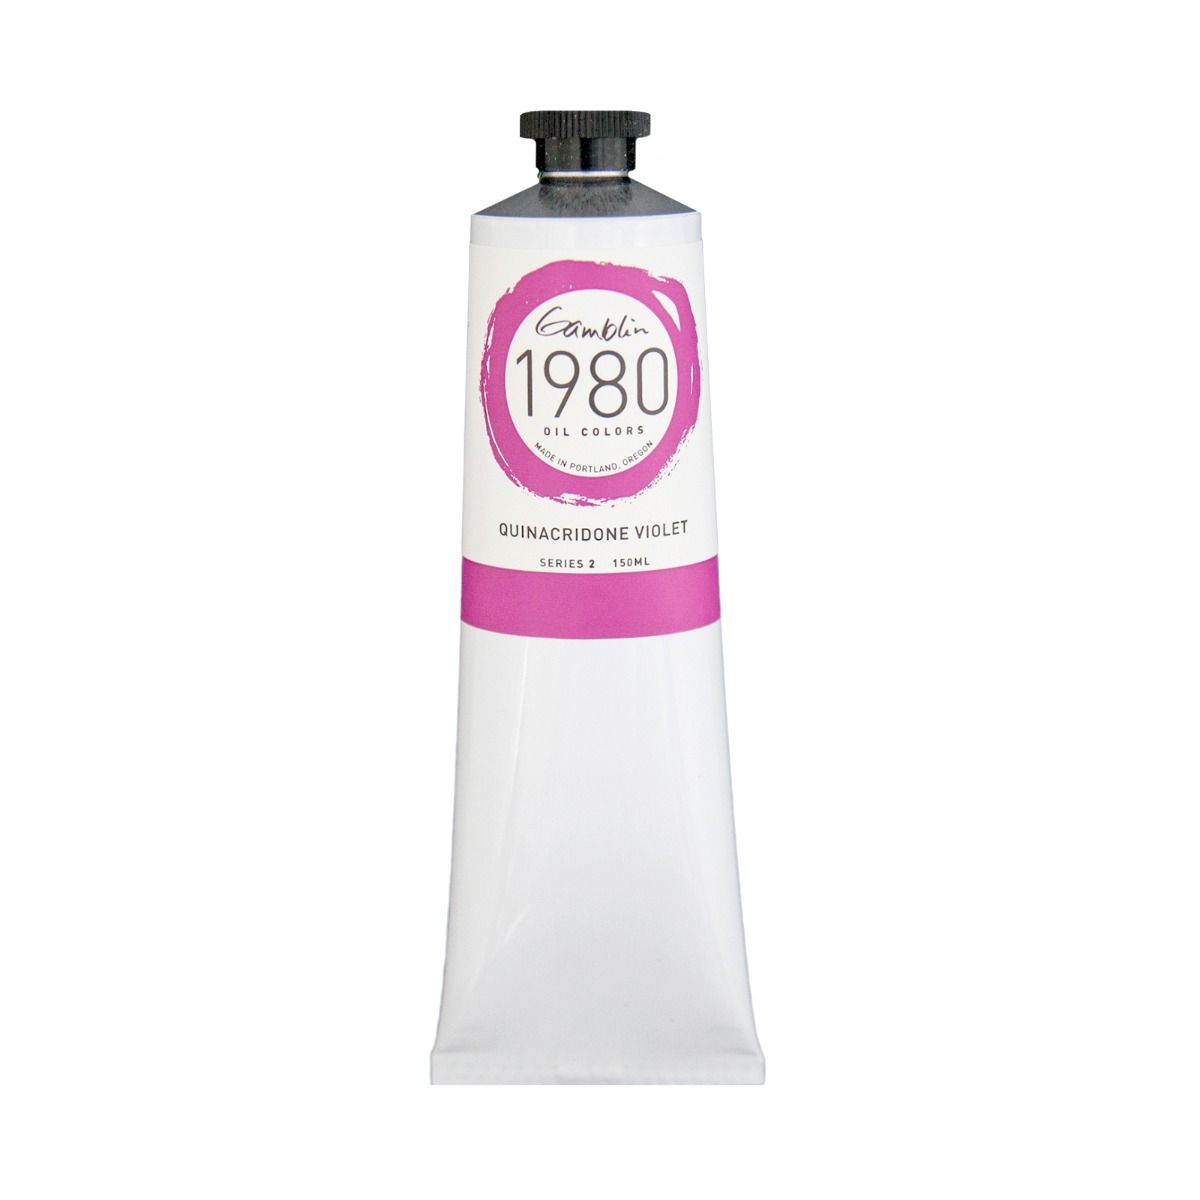 Gamblin 1980 Oils - Quinacridone Violet, 150 ml (5.07oz)